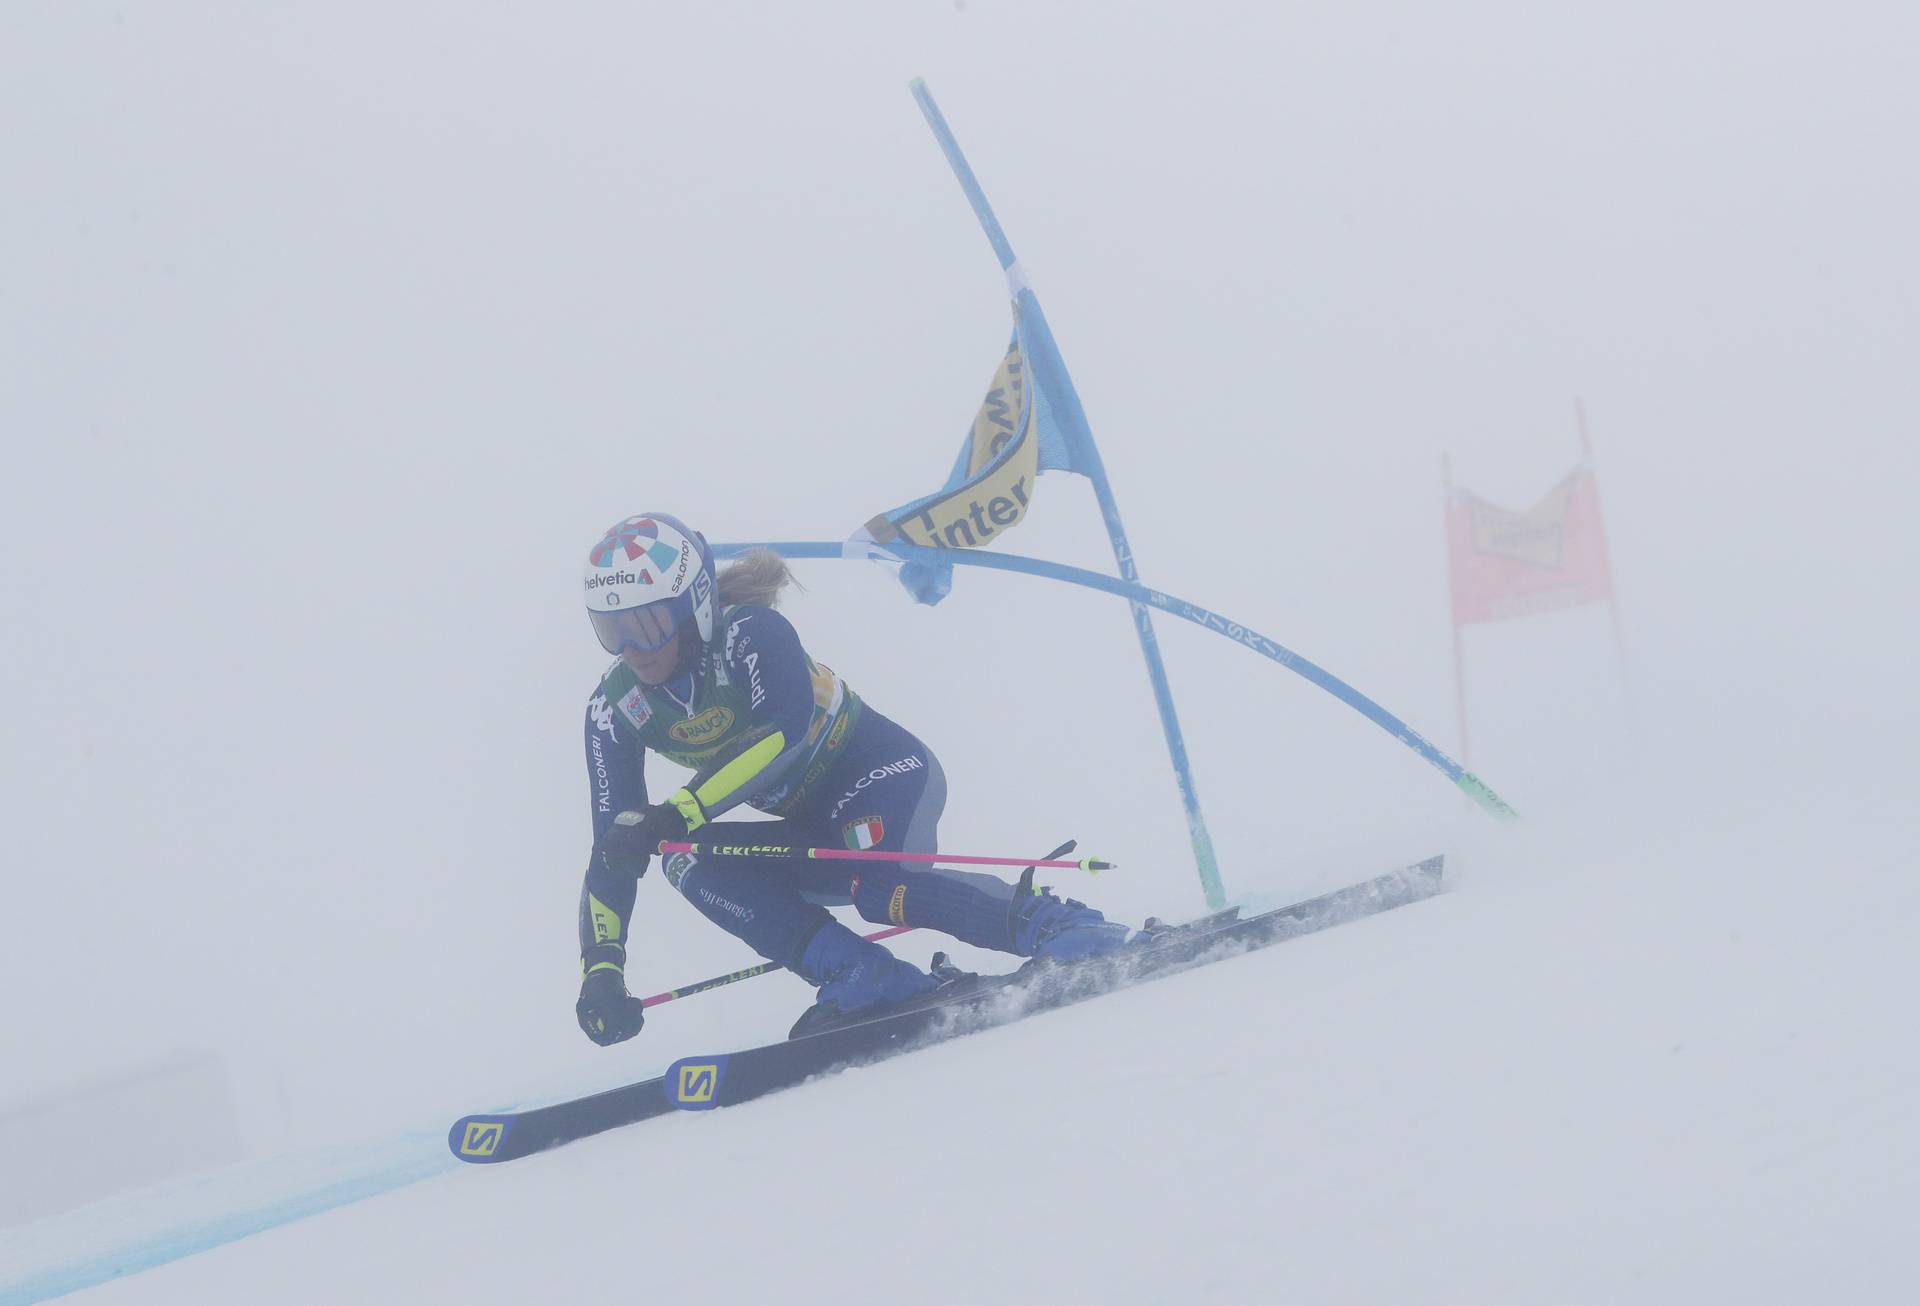 FIS Ski World Cup - Soelden